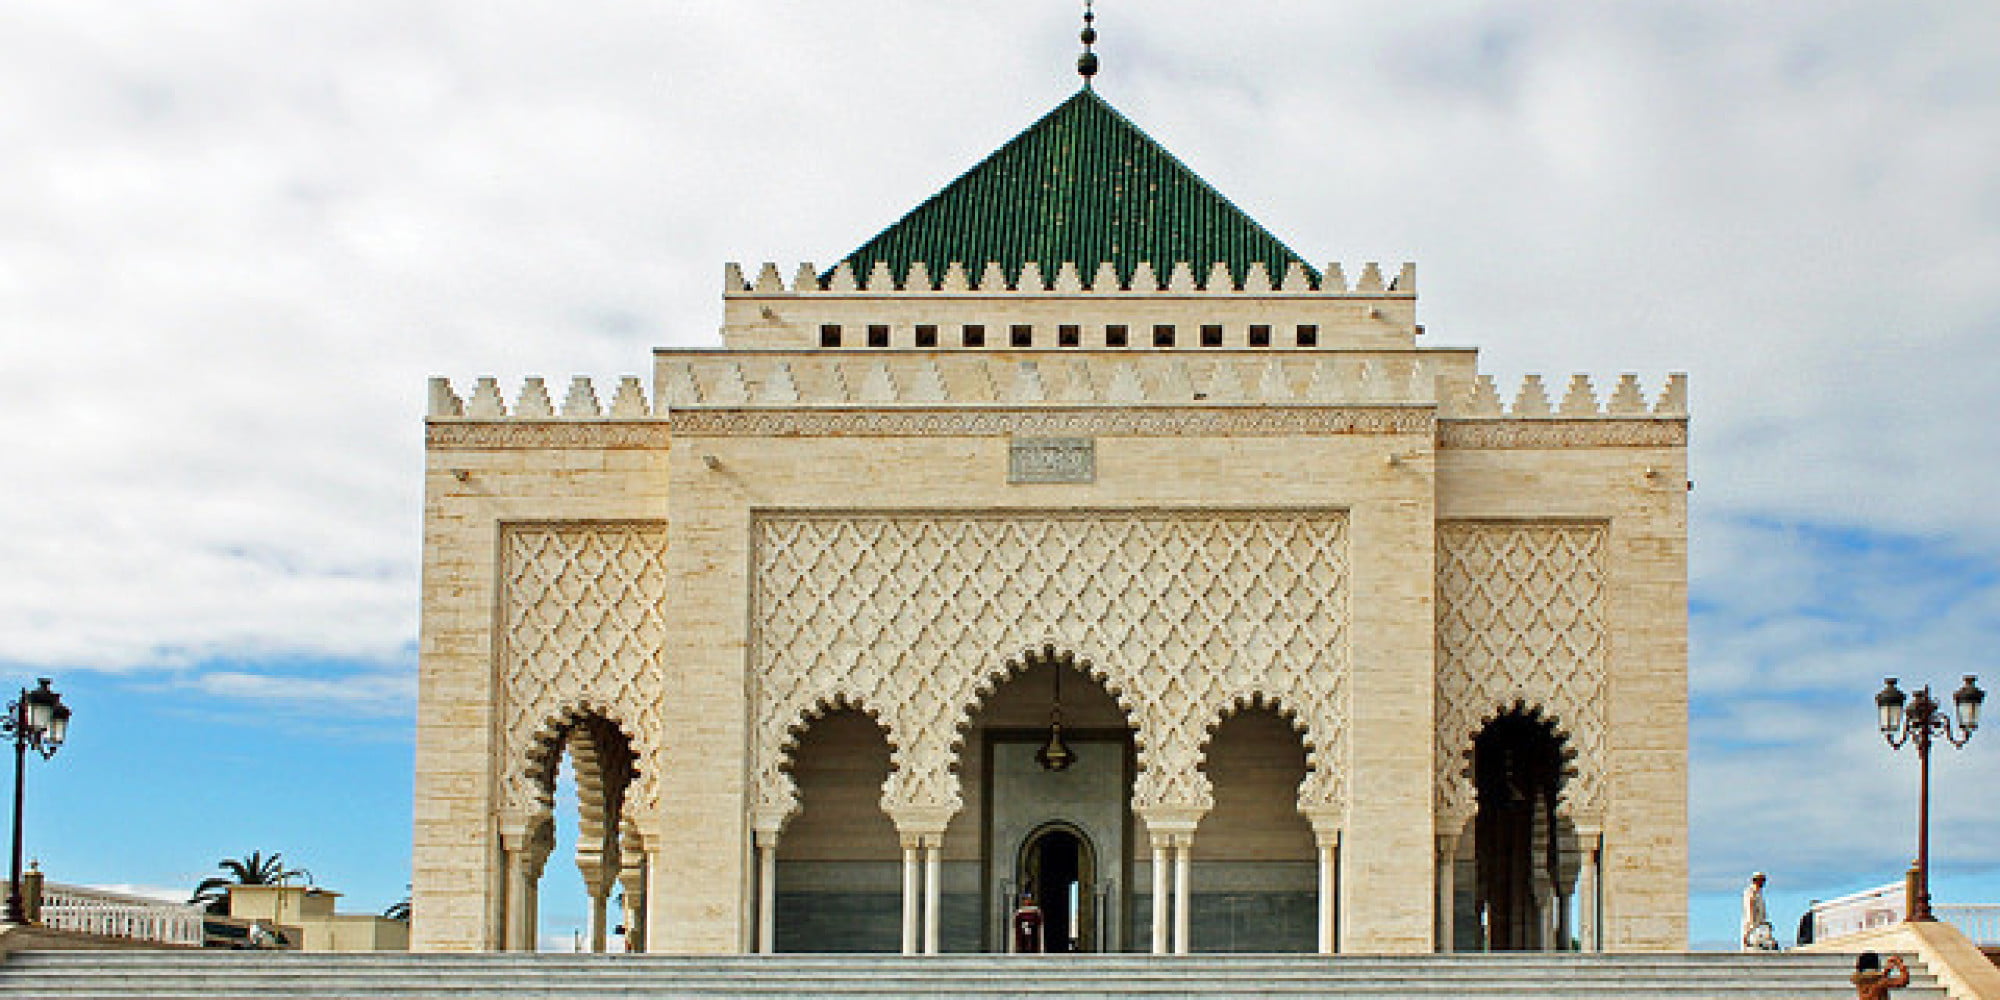 The Mohammed V Mausoleum